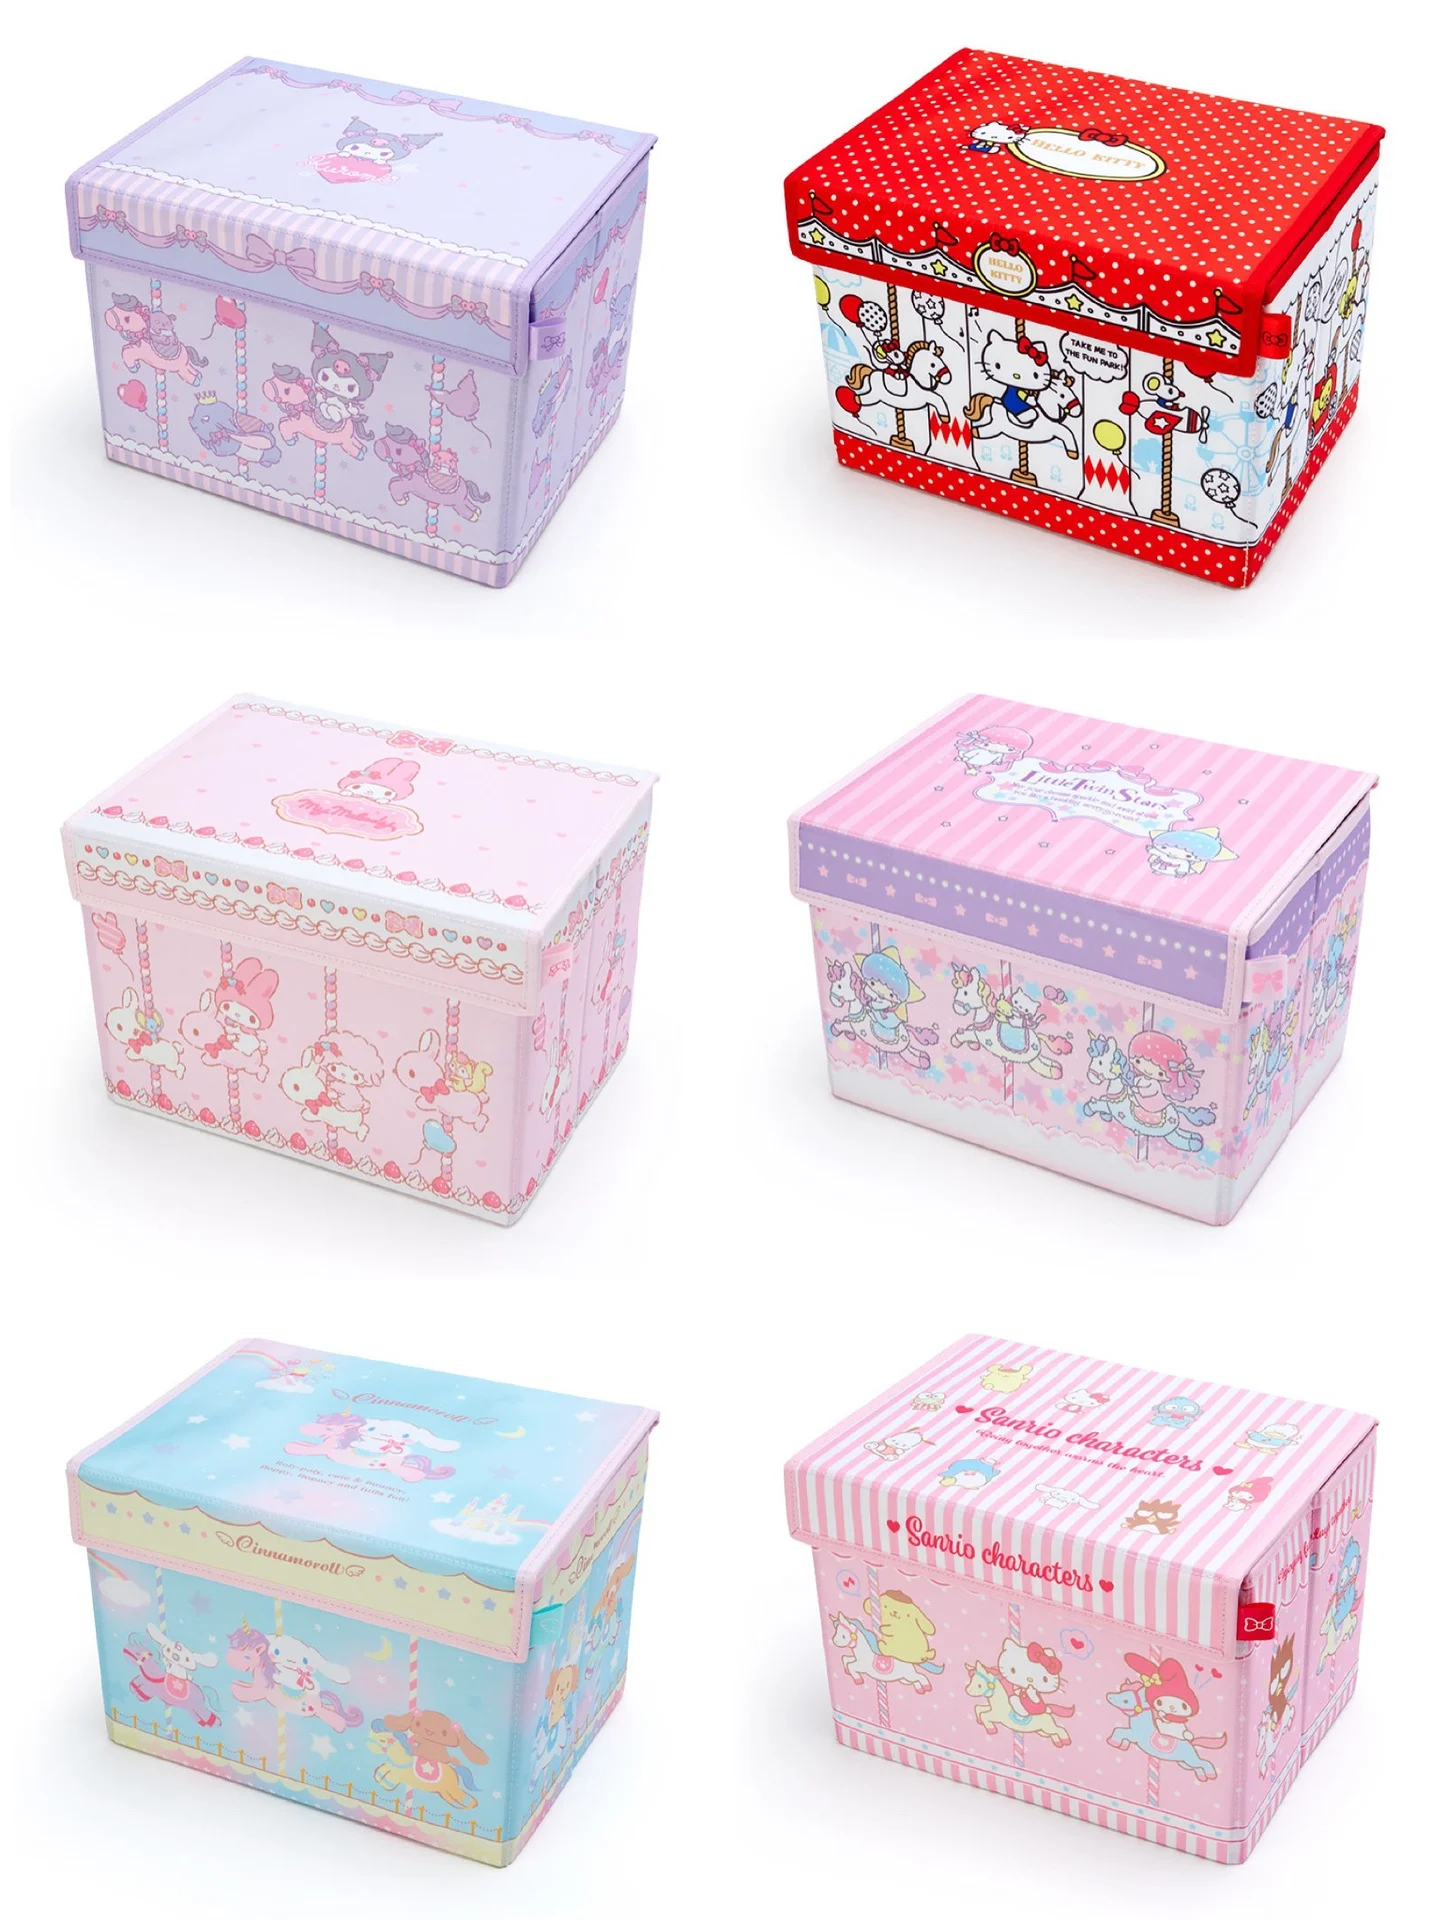 Caja de almacenamiento plegable de tela adorable de estilo japonés para el hogar, con tapa, puede almacenar libros y juguetes, artículos diversos en el dormitorio de estudiantes.